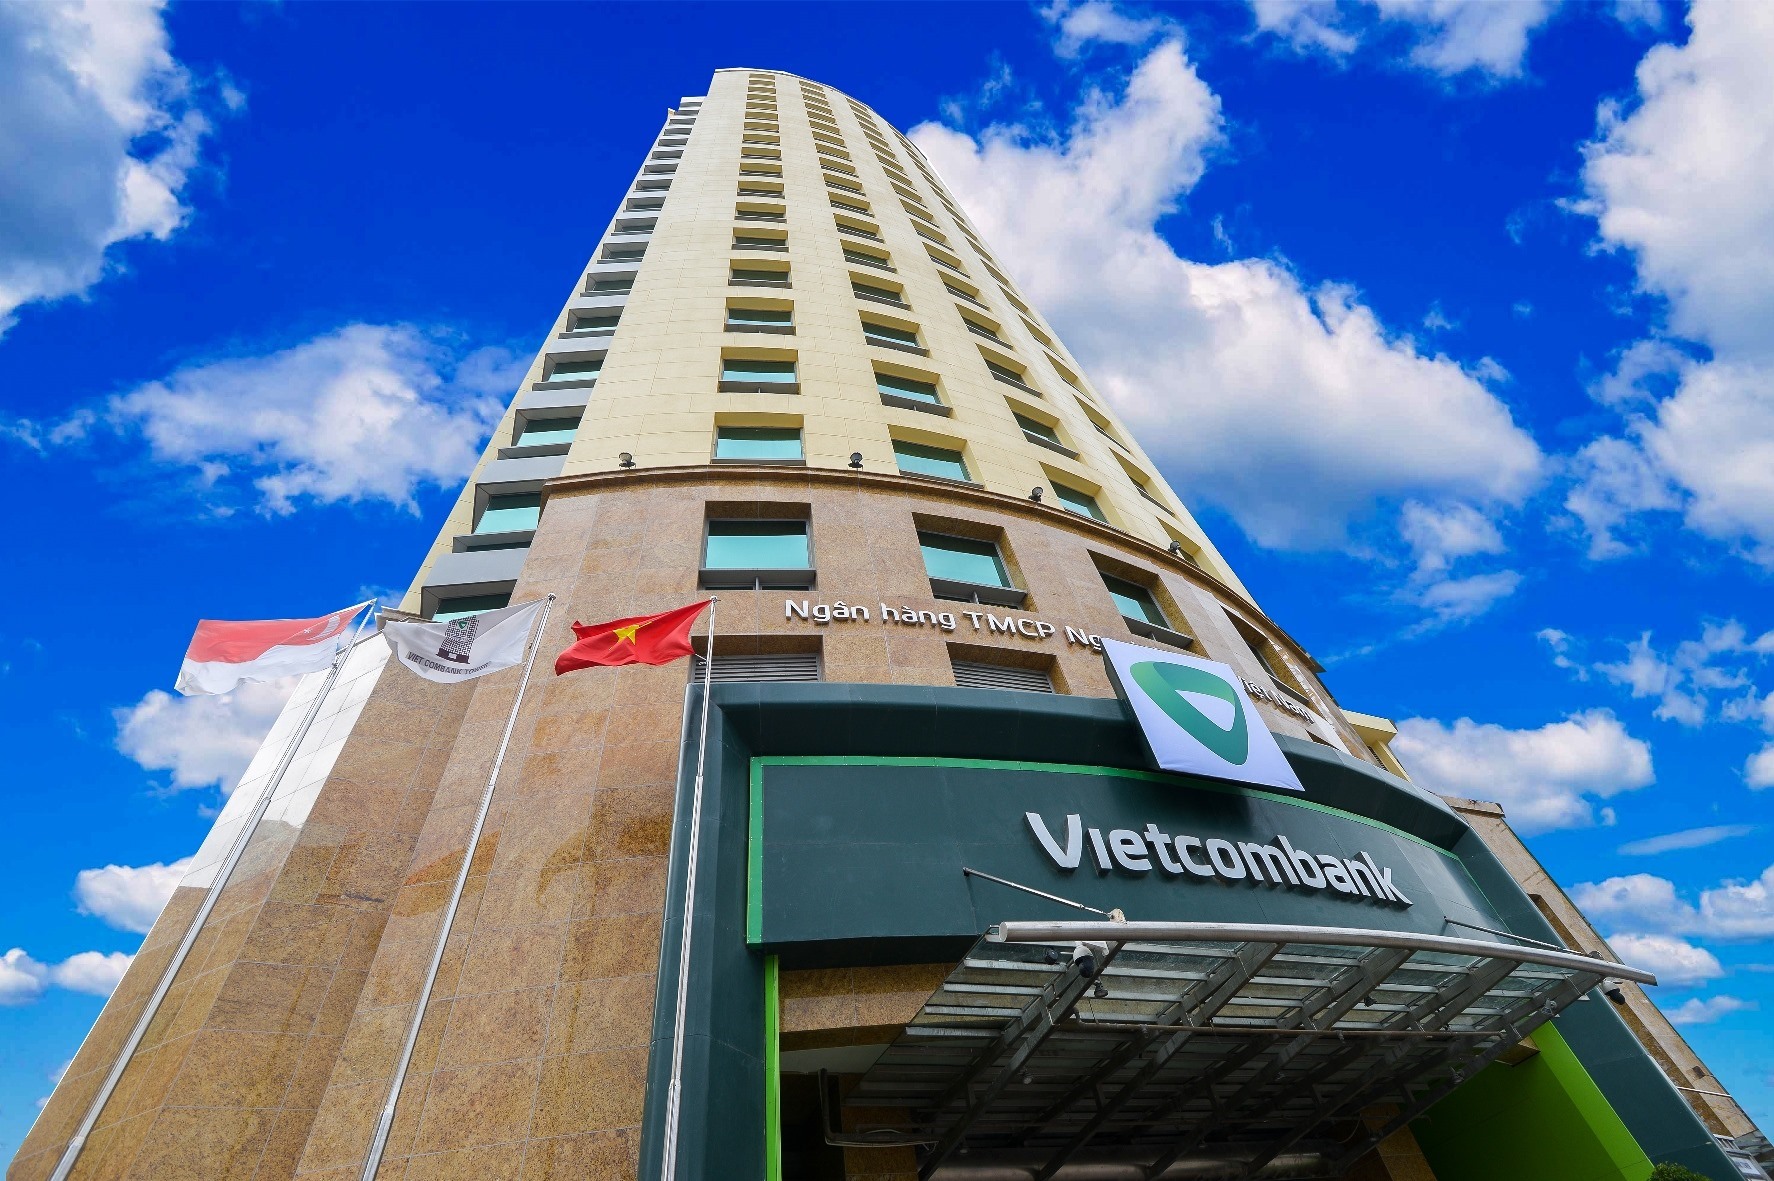 Tòa nhà trụ sở chính Vietcombank tại Thủ đô Hà Nội. Ảnh: VCB